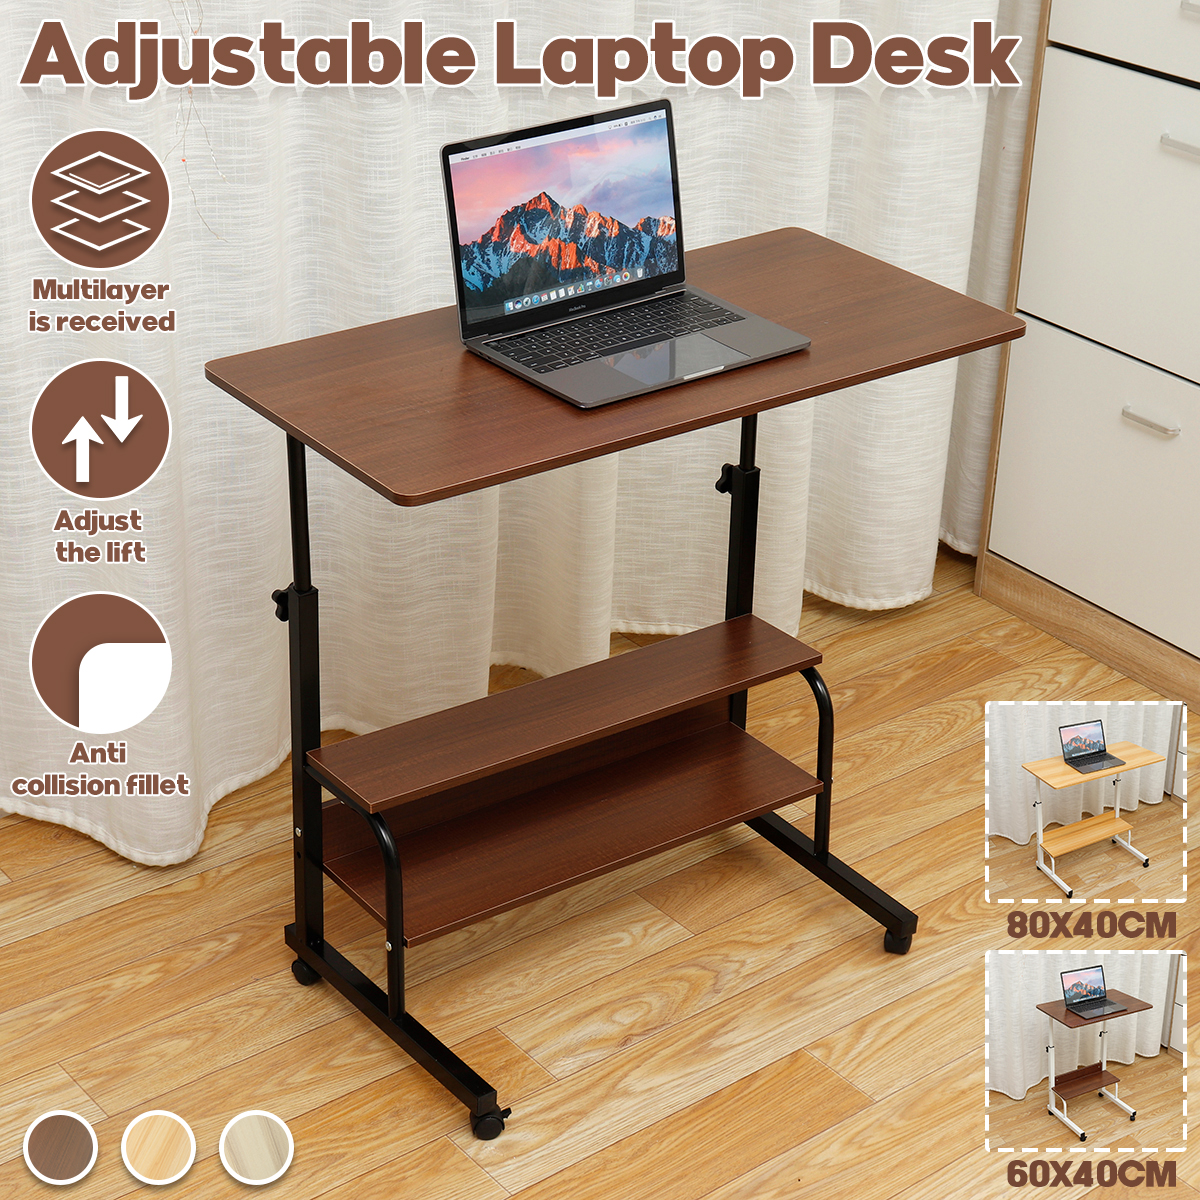 Adjustable-Laptop-Desk-Movable-Bed-Desk-Writing-Small-Desk-Lifting-Desk-Mobile-Bedside-Table-for-Hom-1777082-1